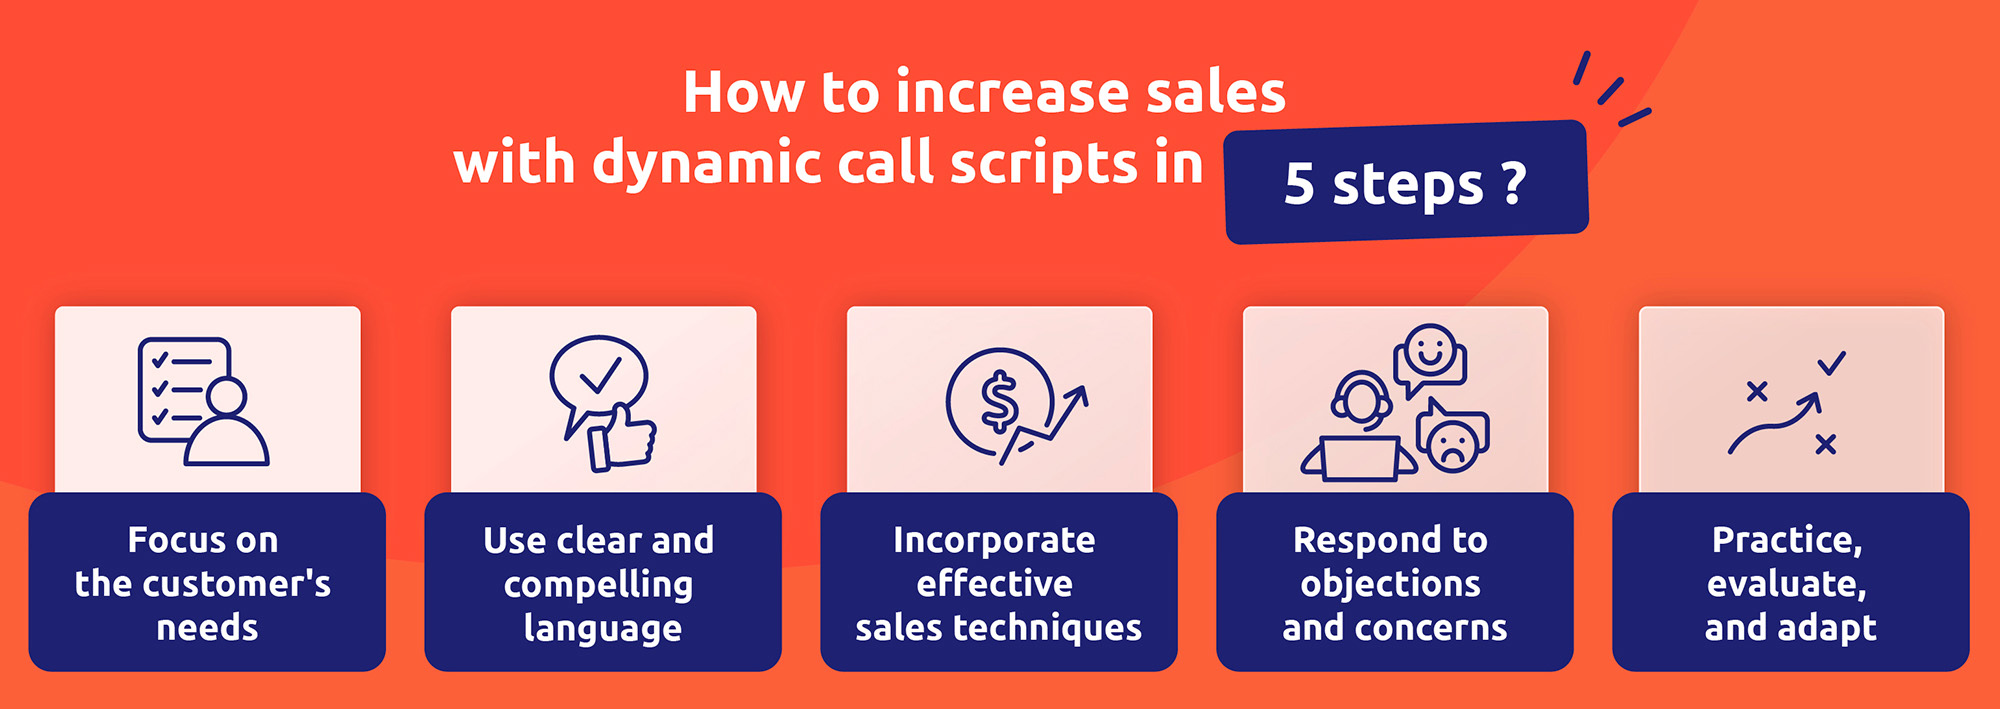 Una strategia su come aumentare le vendite con call script dinamici in 5 passi